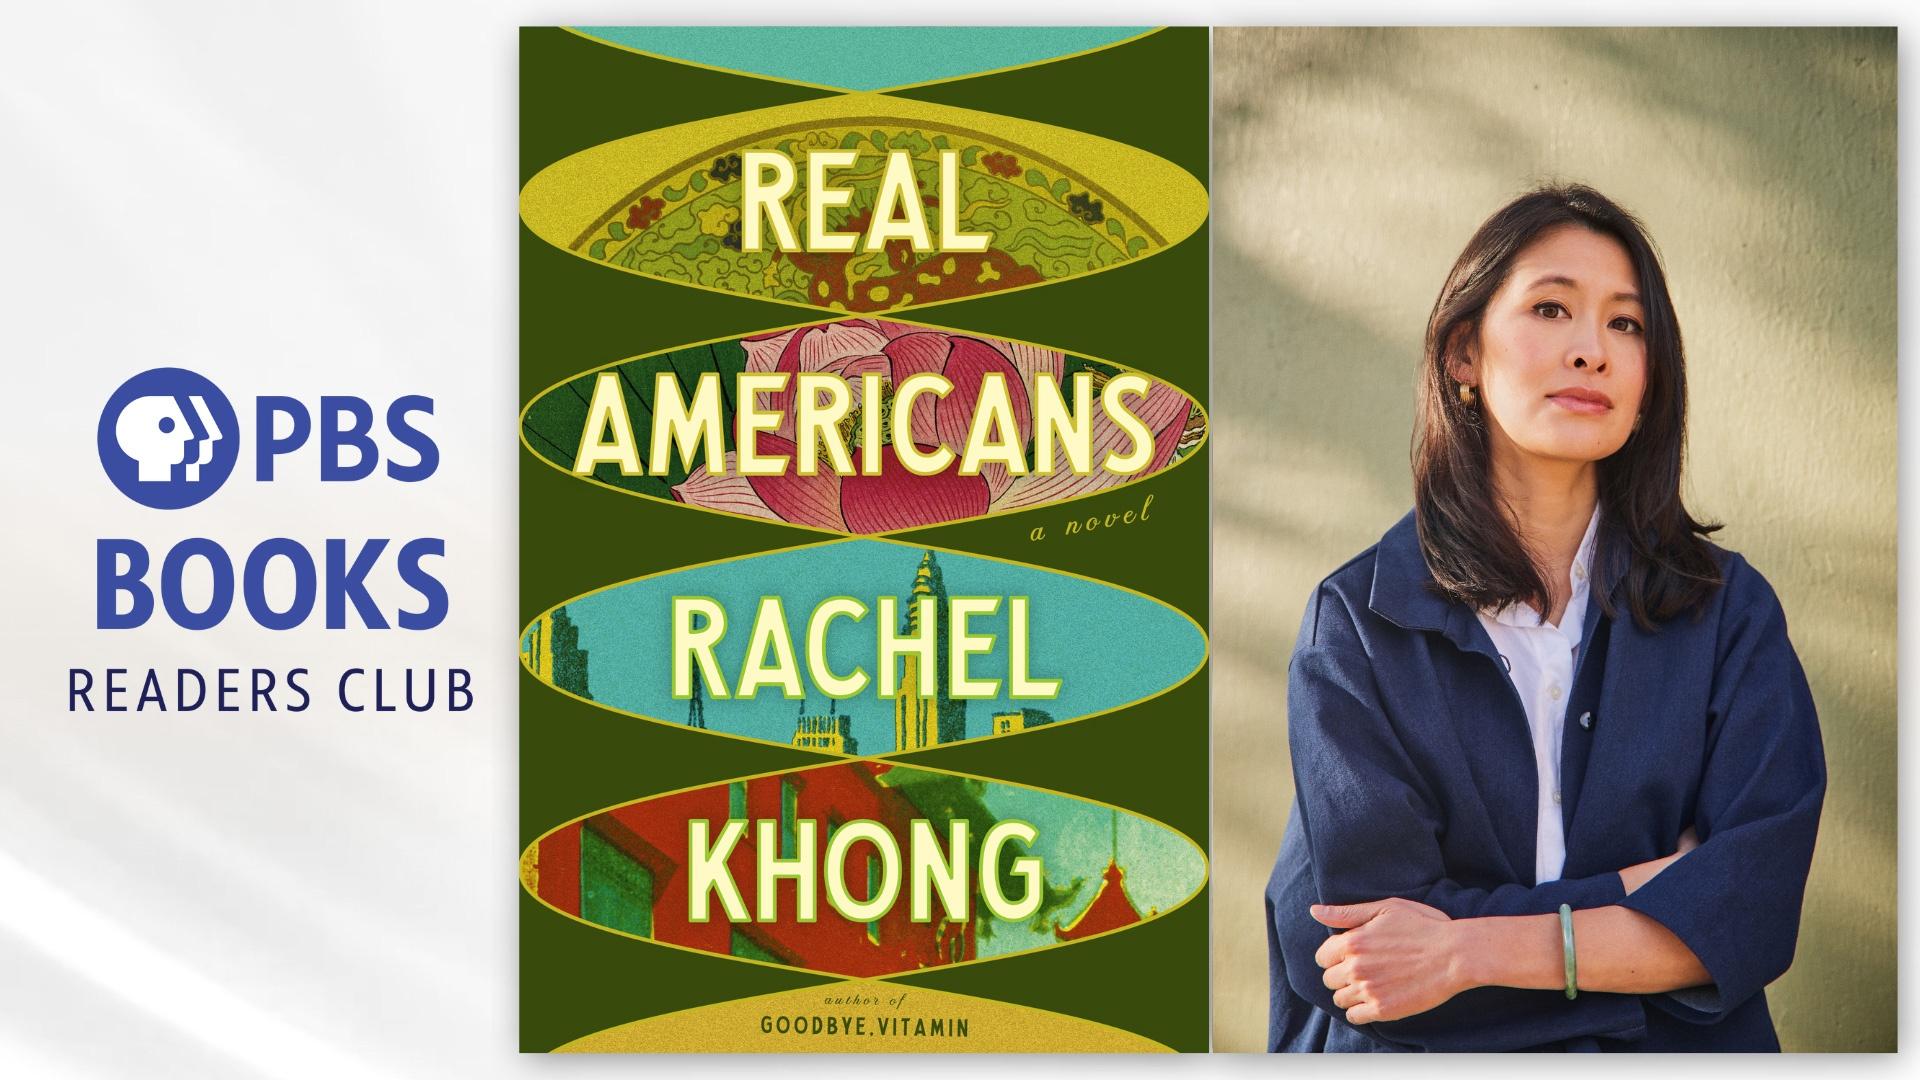 PBS Books Readers Club – Rachel Khong